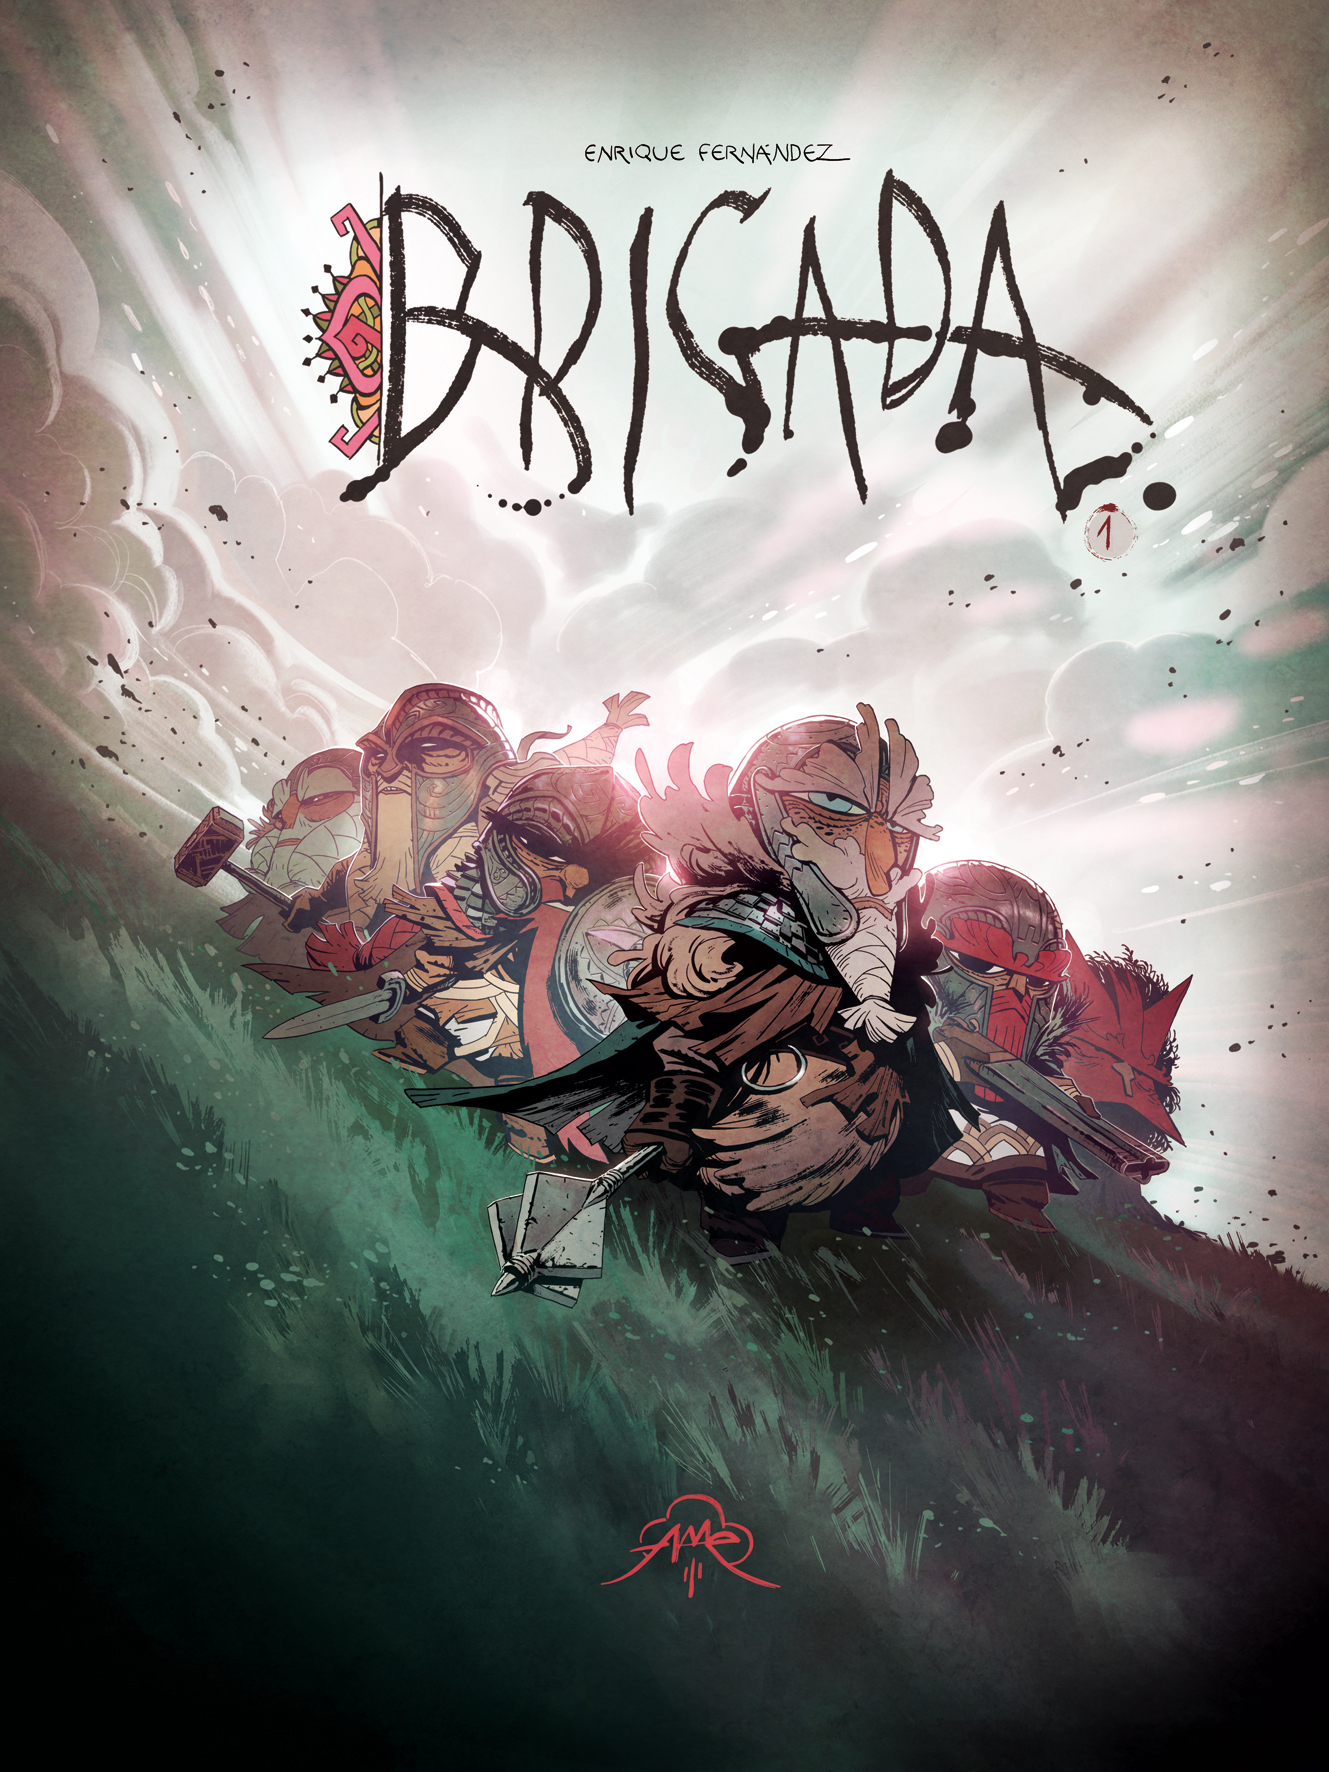 Read online Brigada comic -  Issue #1 - 1